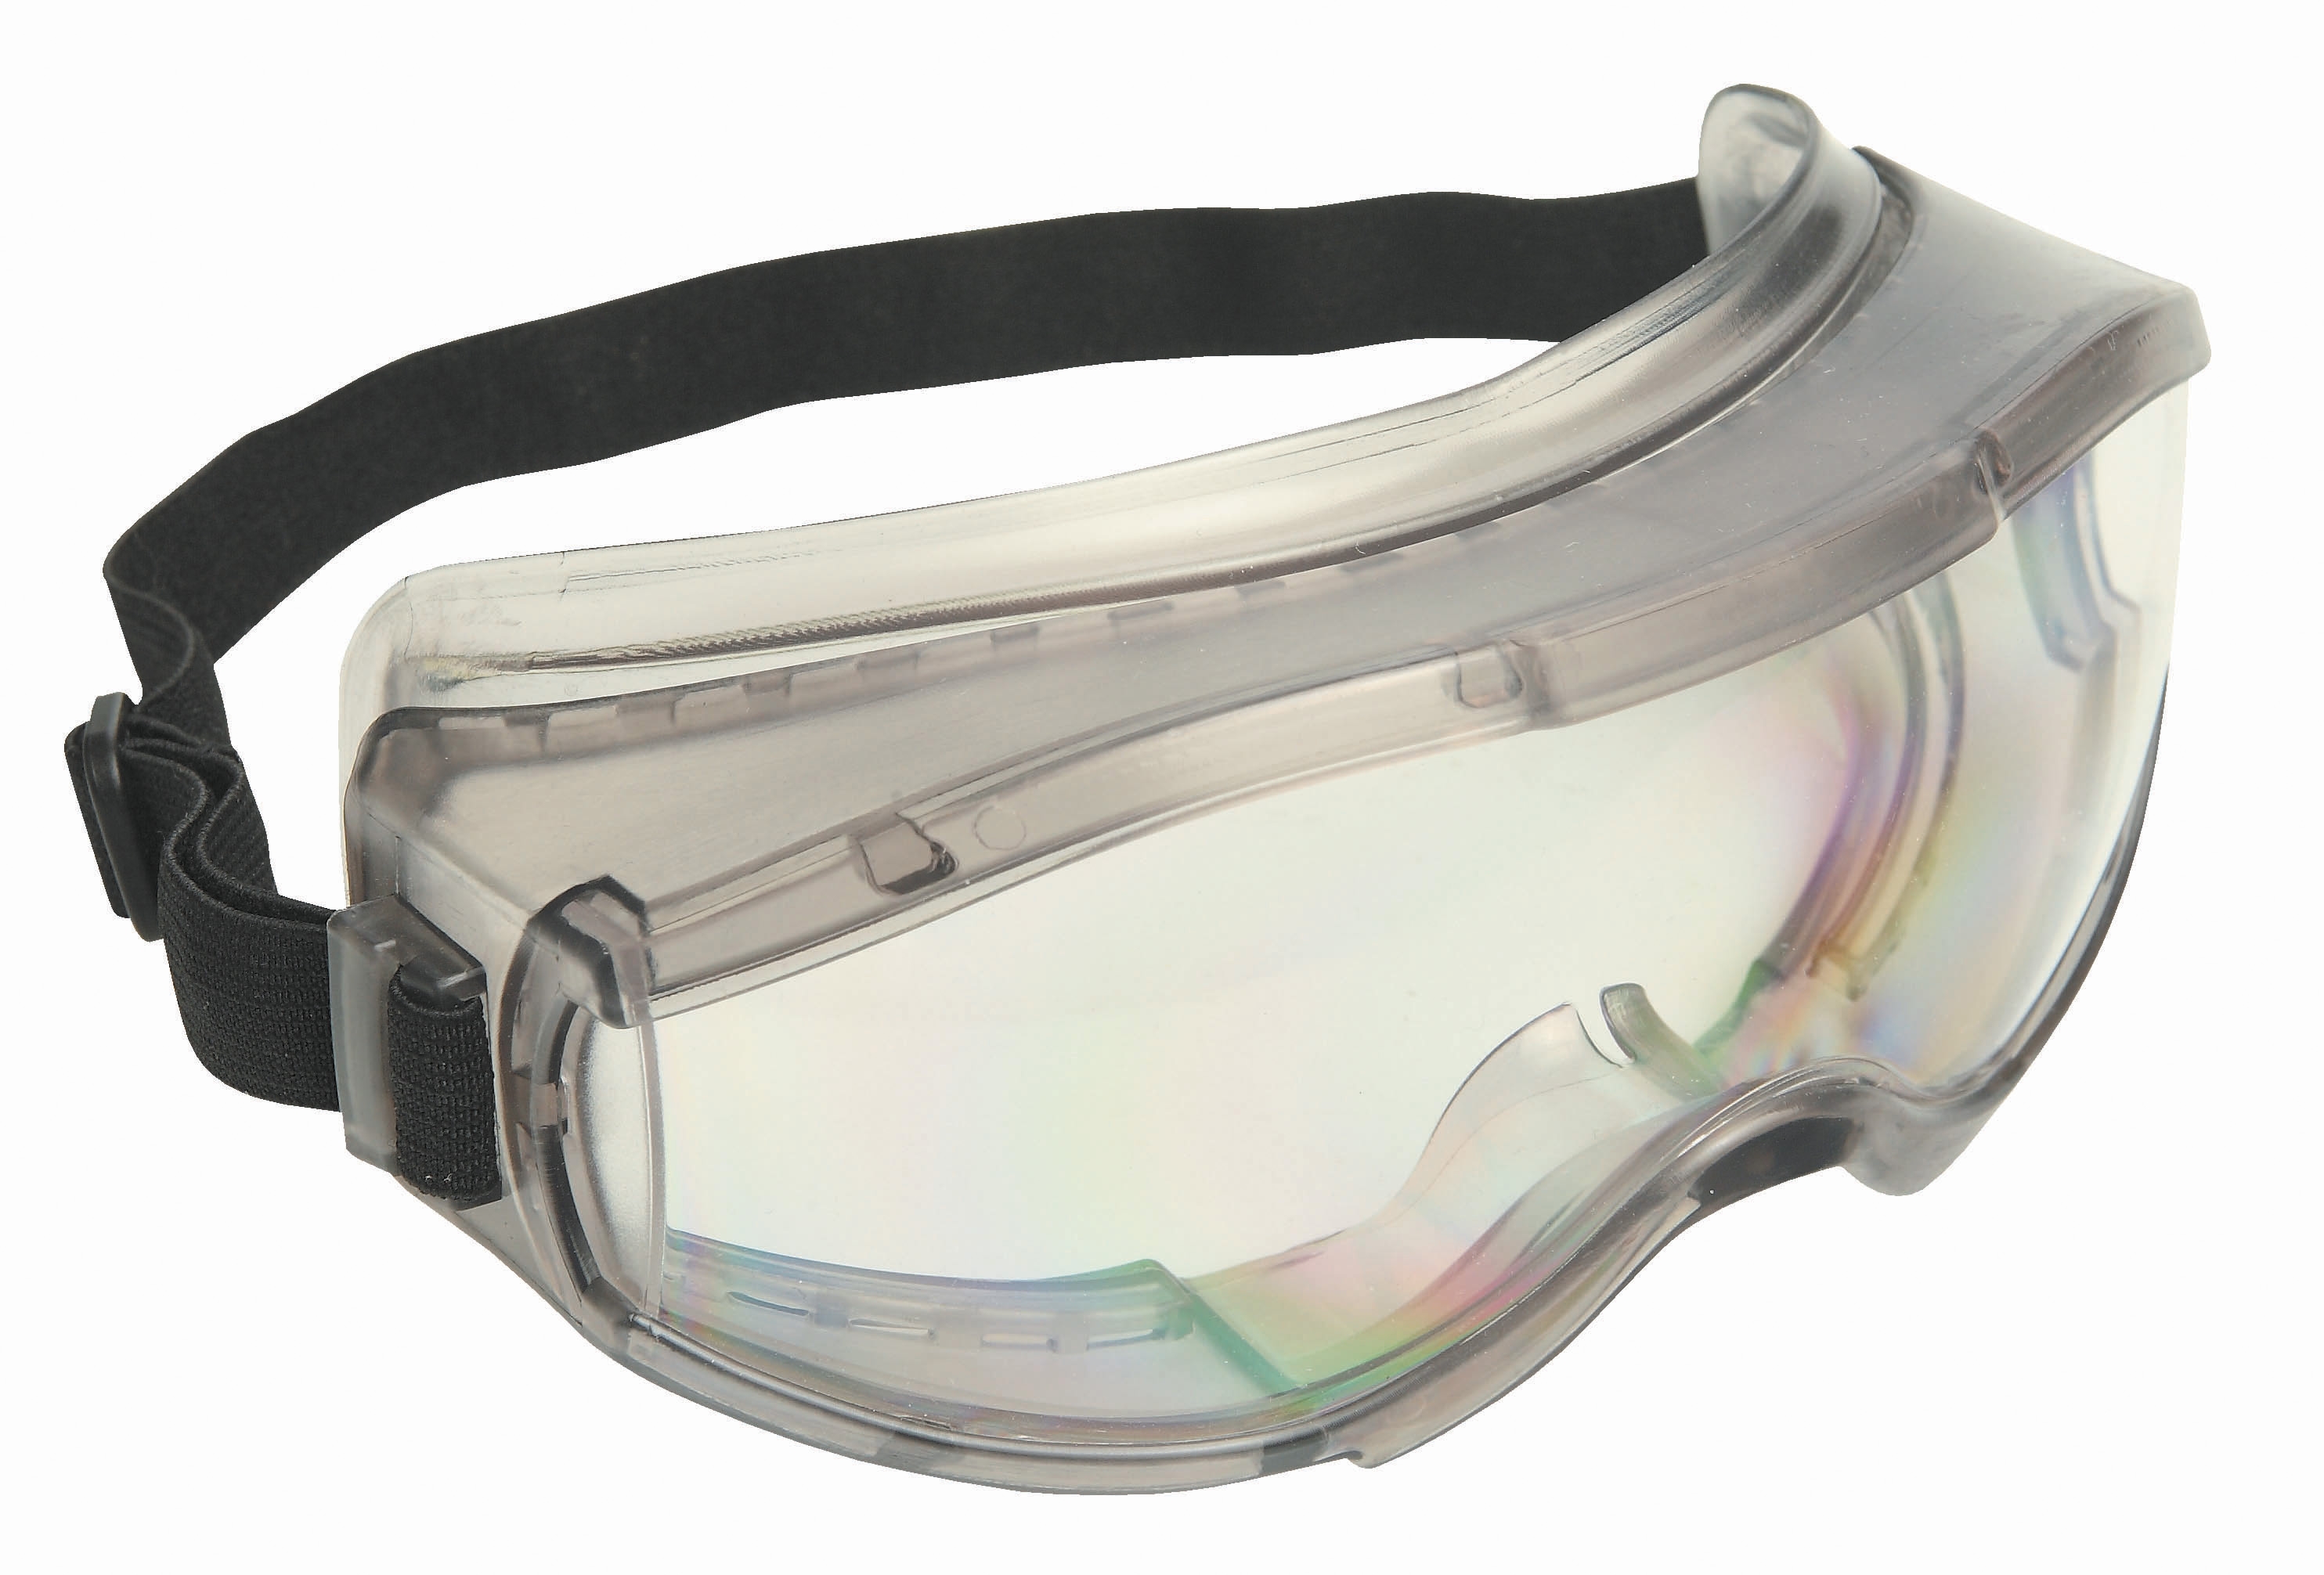 Veiligheidsbril Waitara ruimzicht met ventilatie